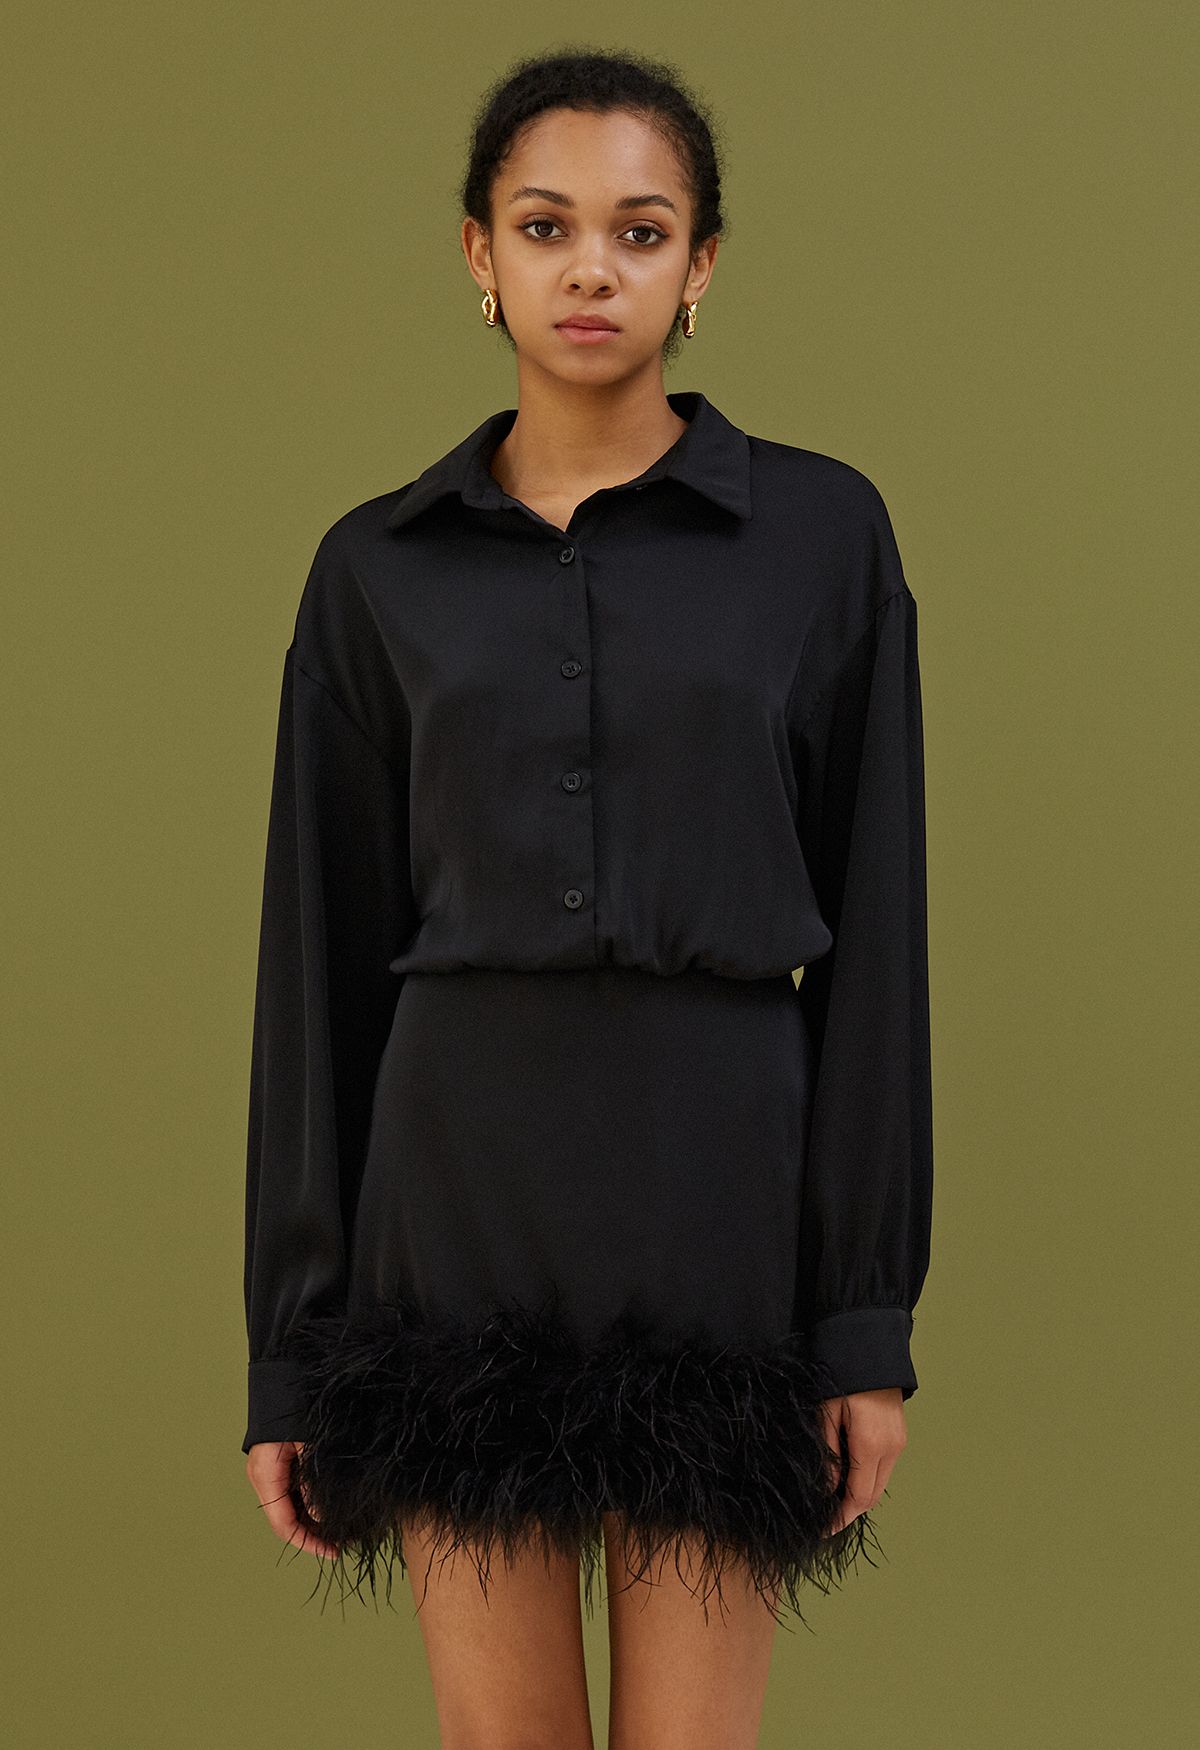 فستان ساتان بأكمام طويلة من الريش الأثيري باللون الأسود